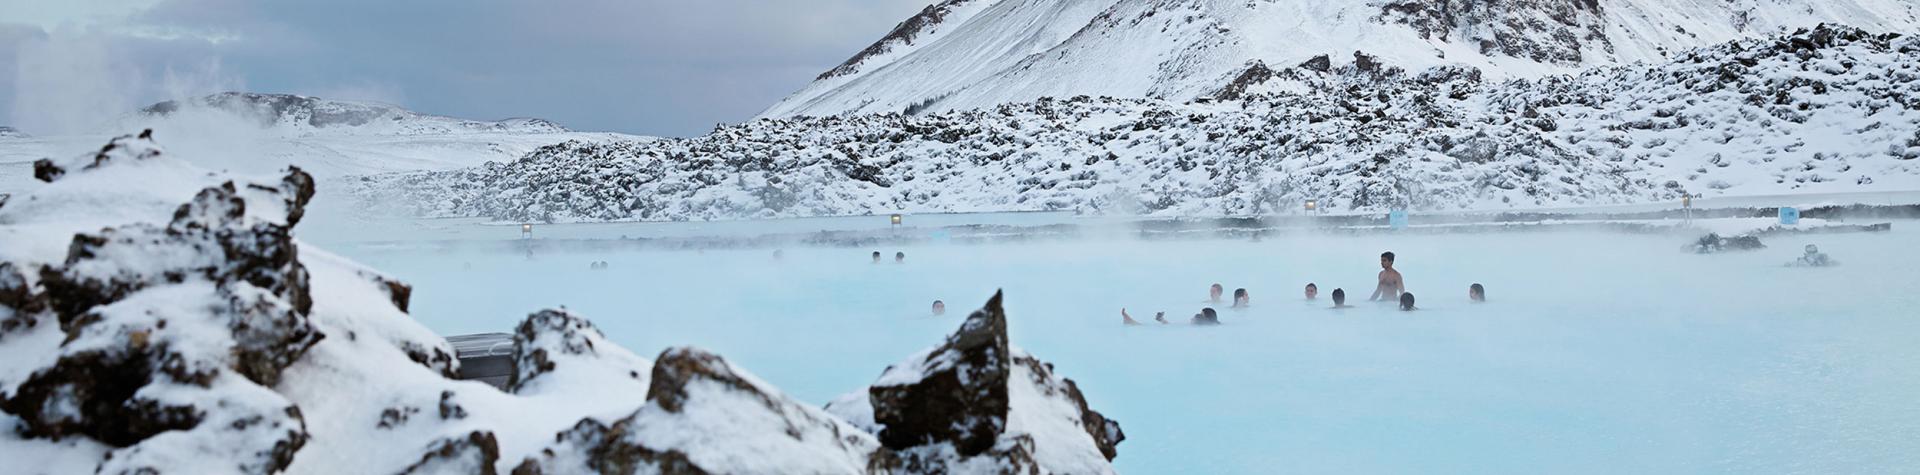 Blå lagunen på Island i vinterlandskap